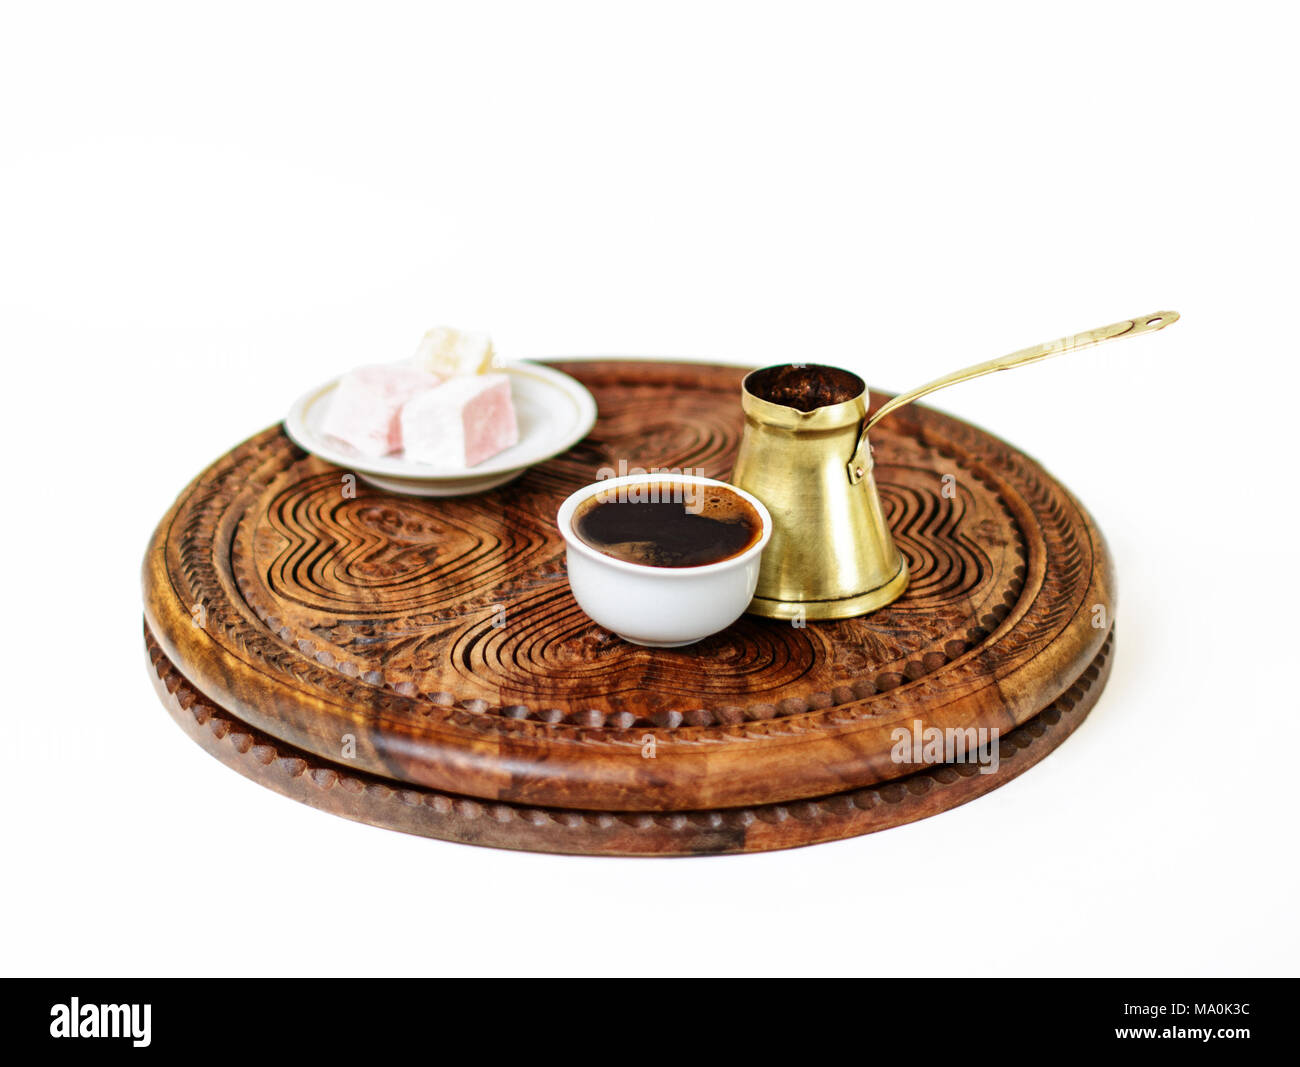 Le café turc servi de manière traditionnelle dans un fildzan. Elle a été faite dans le cezve laiton, servi avec quelques cubes de rahat lokum comme une douce collation. Banque D'Images